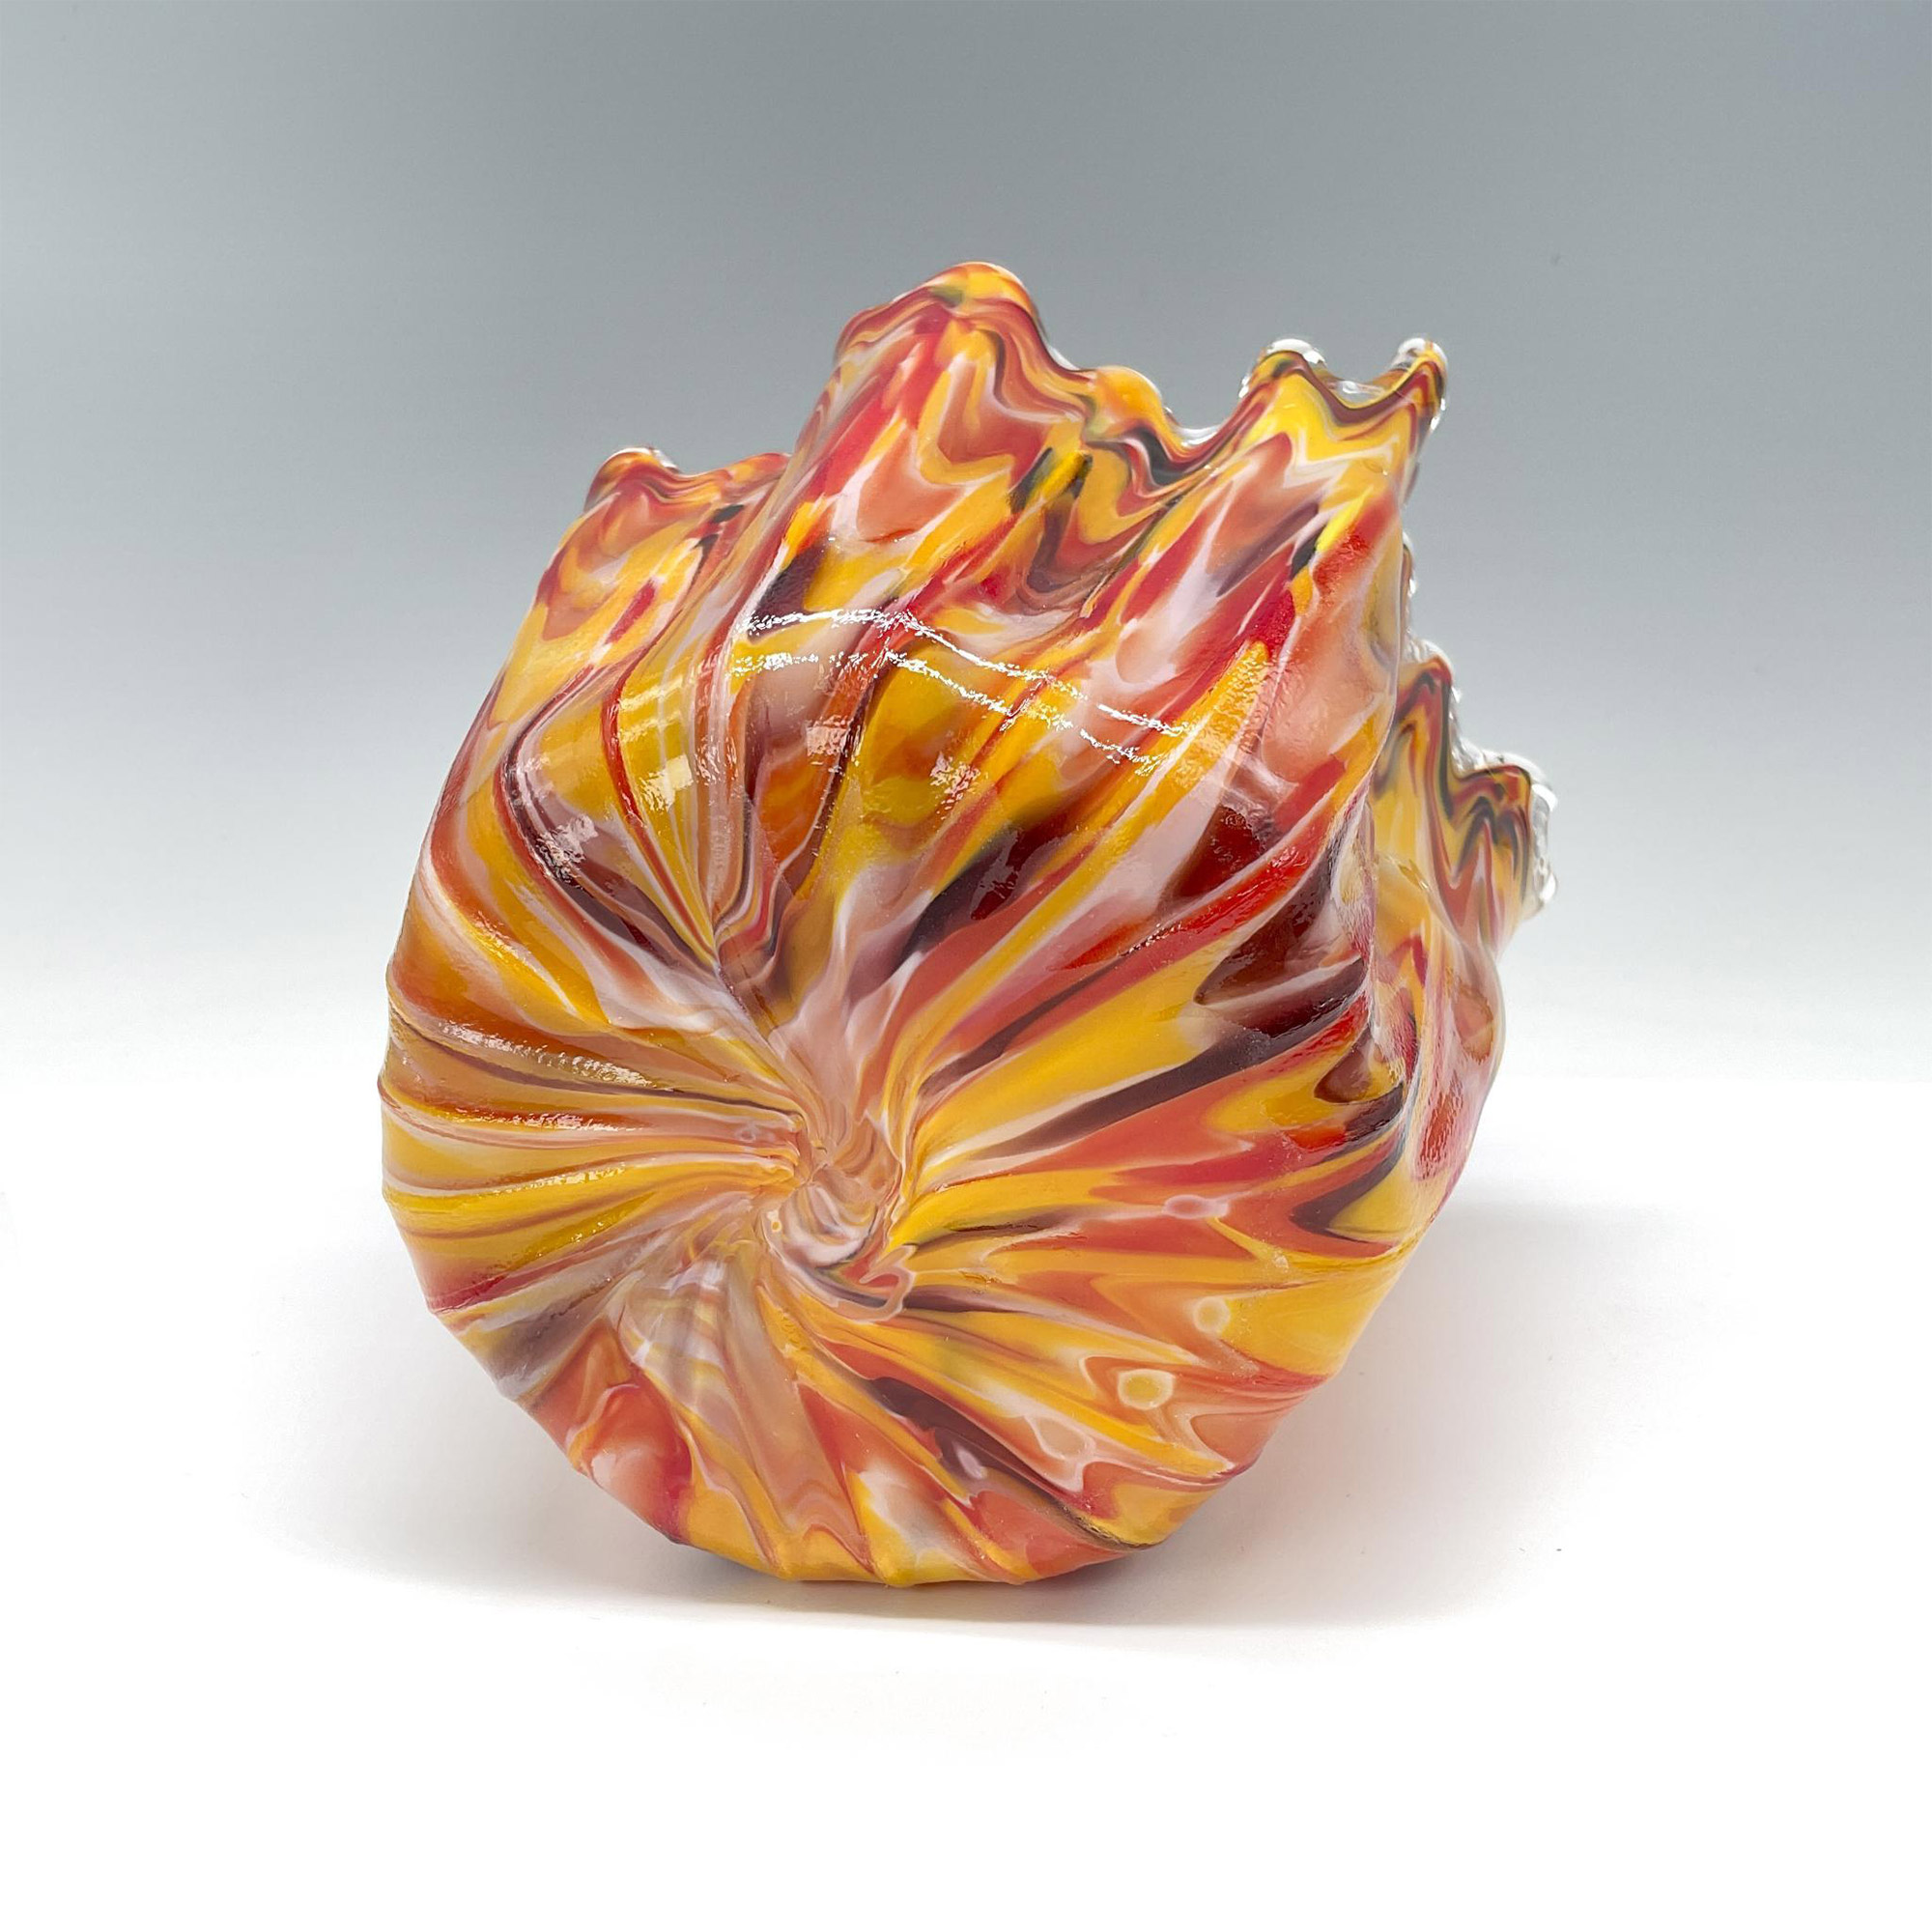 Murano Hand Blown Art Glass Vase in Orange Red Yellow - Image 3 of 3